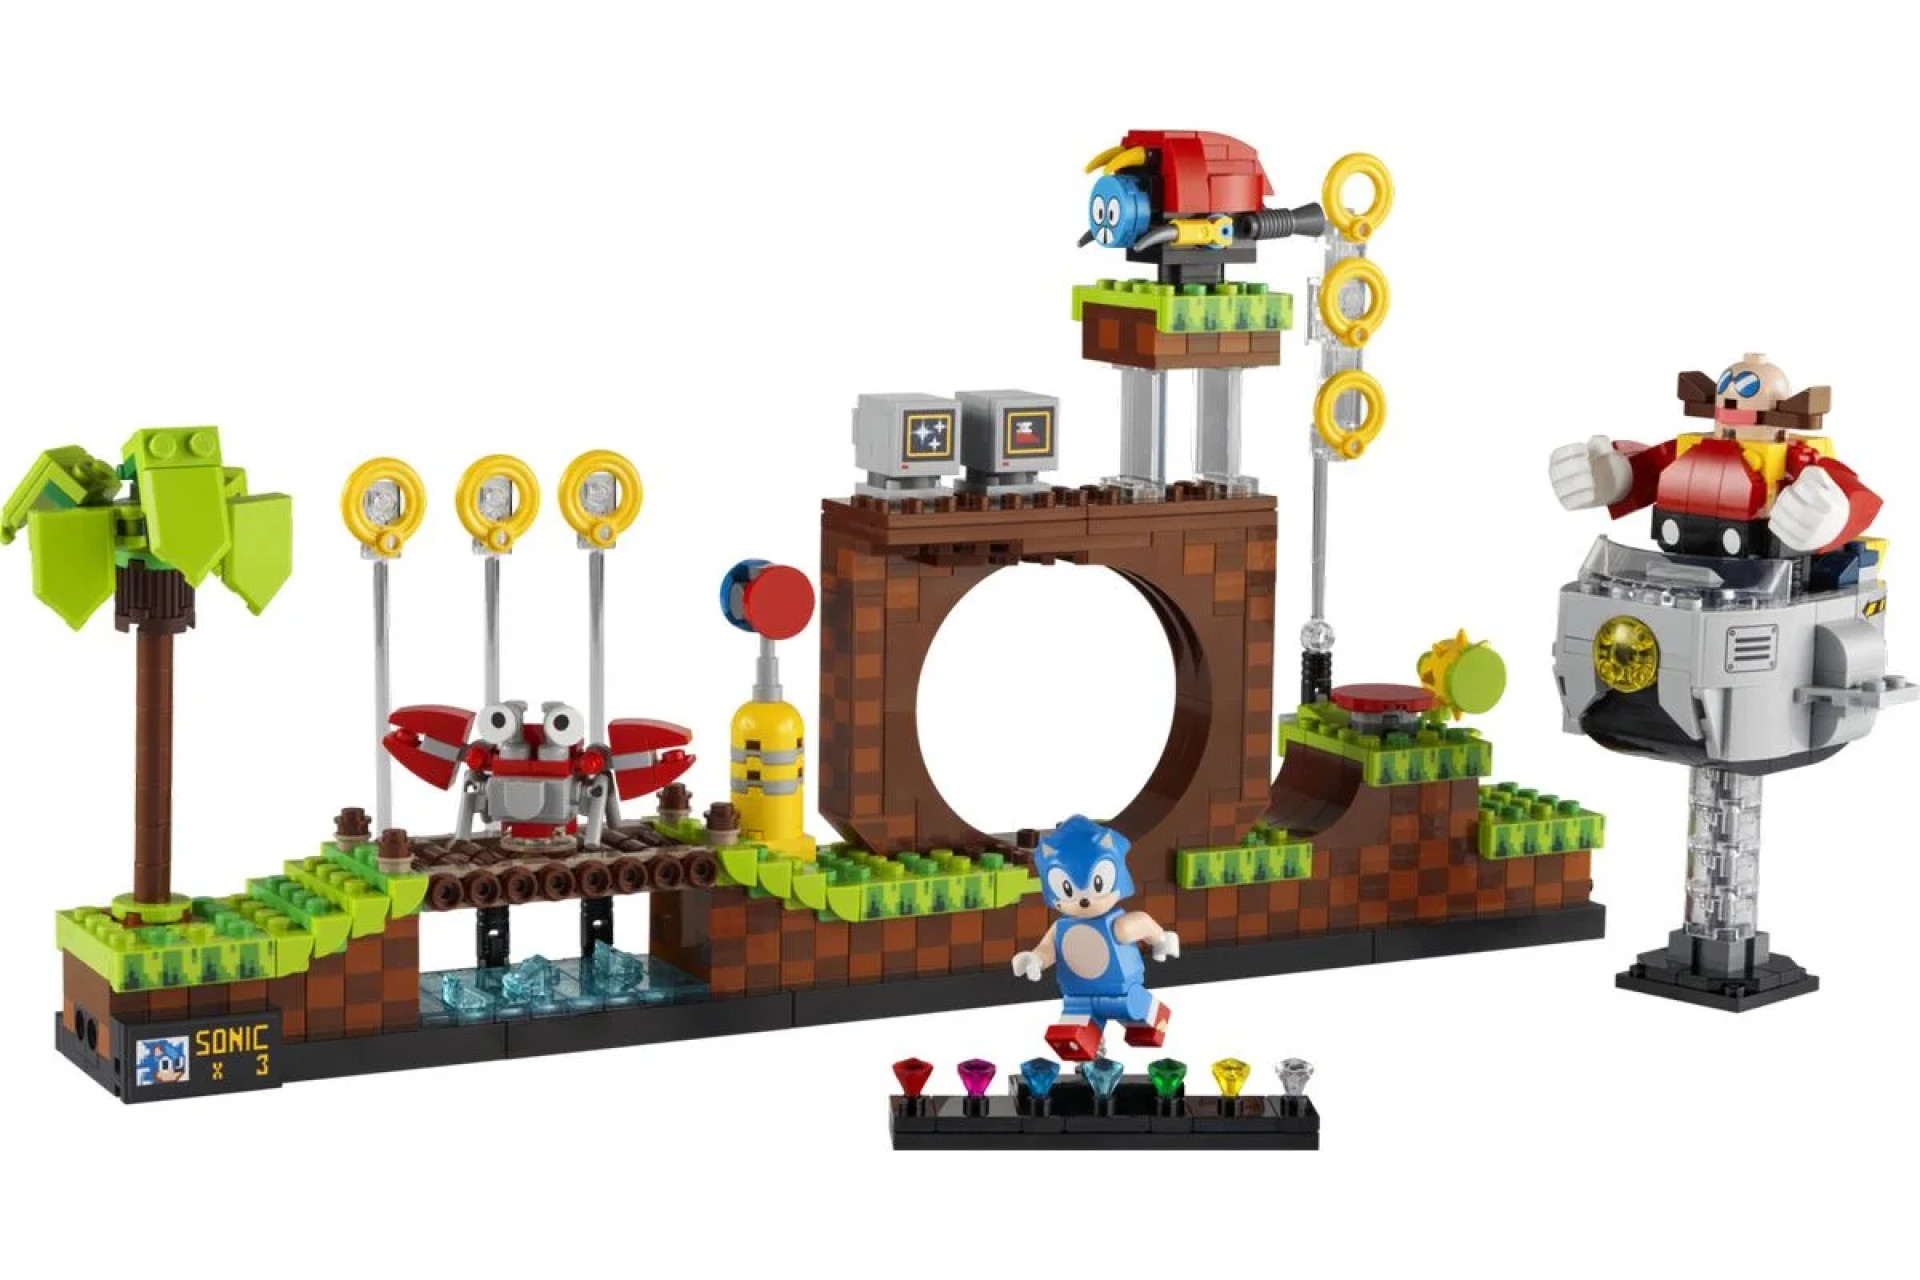 Le set Lego Sonic entier